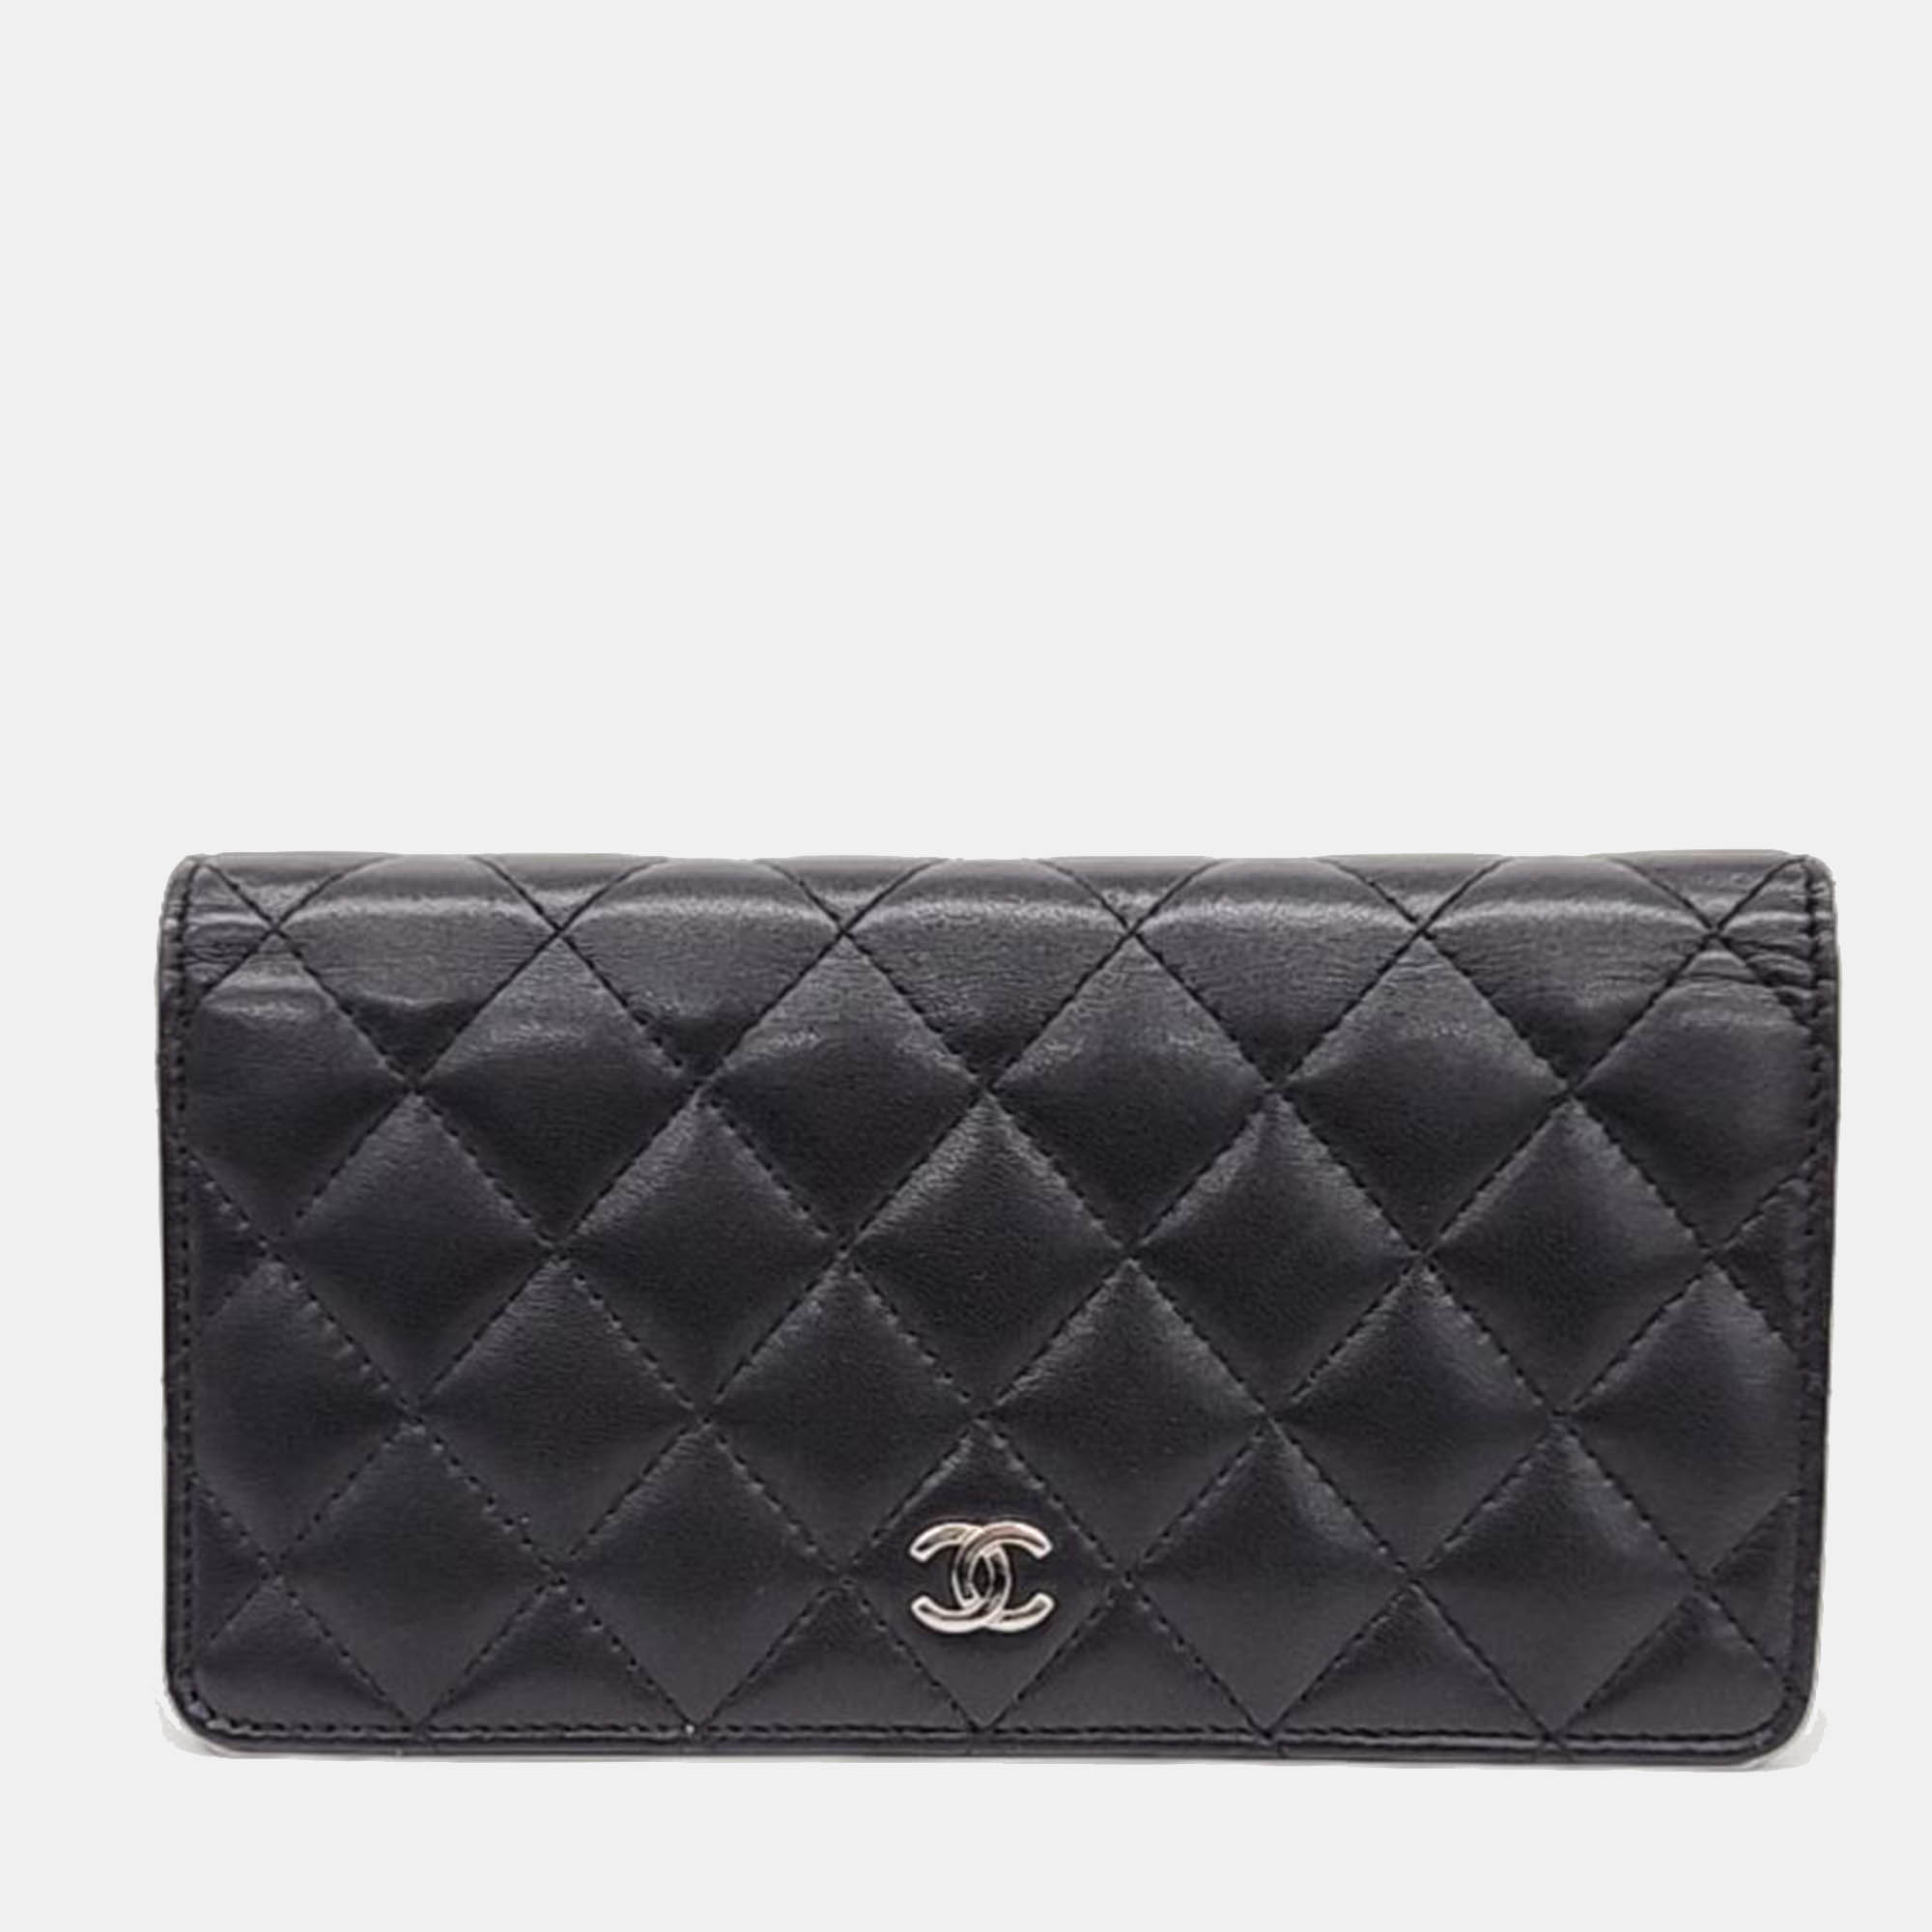 Chanel black lambskin long wallet